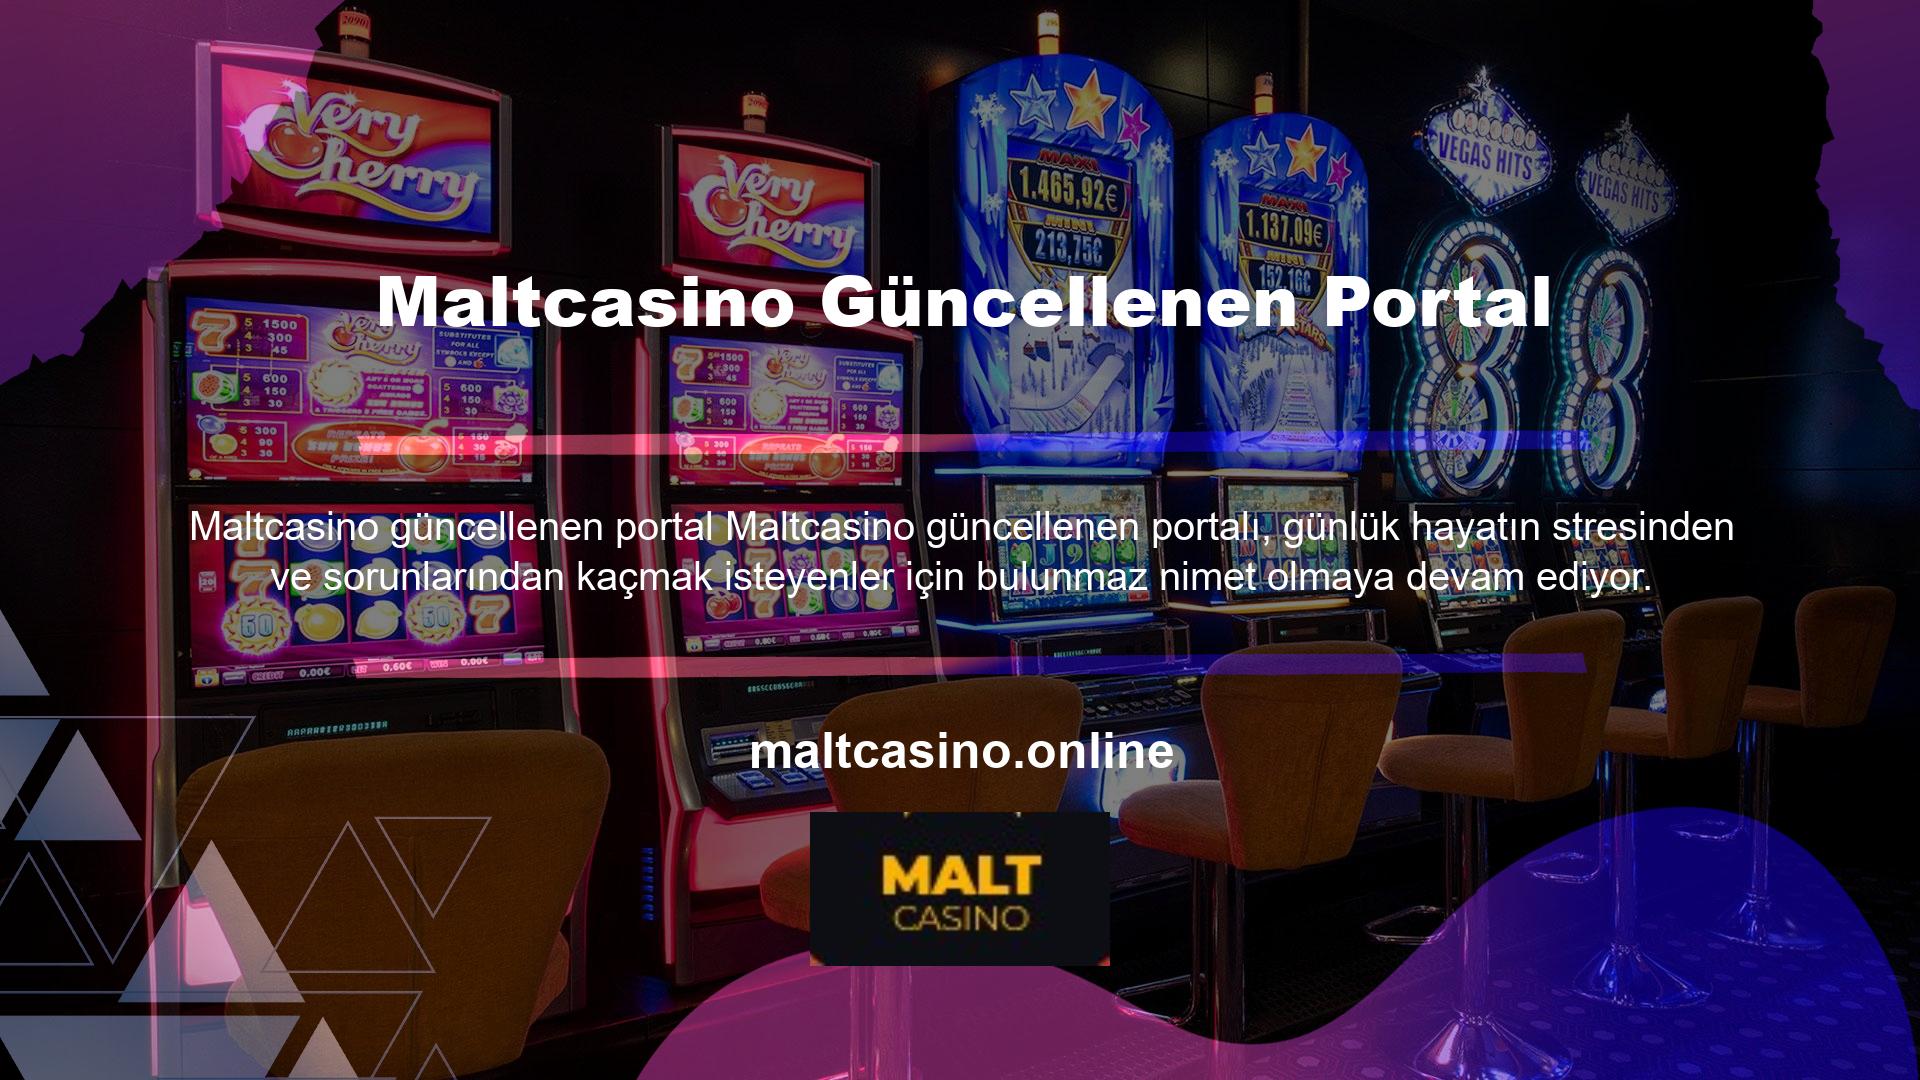 Maltcasino bahis sitesi oldukça kaliteli içeriğe sahip olup birçok kişinin eğlenirken para kazanmasına olanak sağlamaktadır